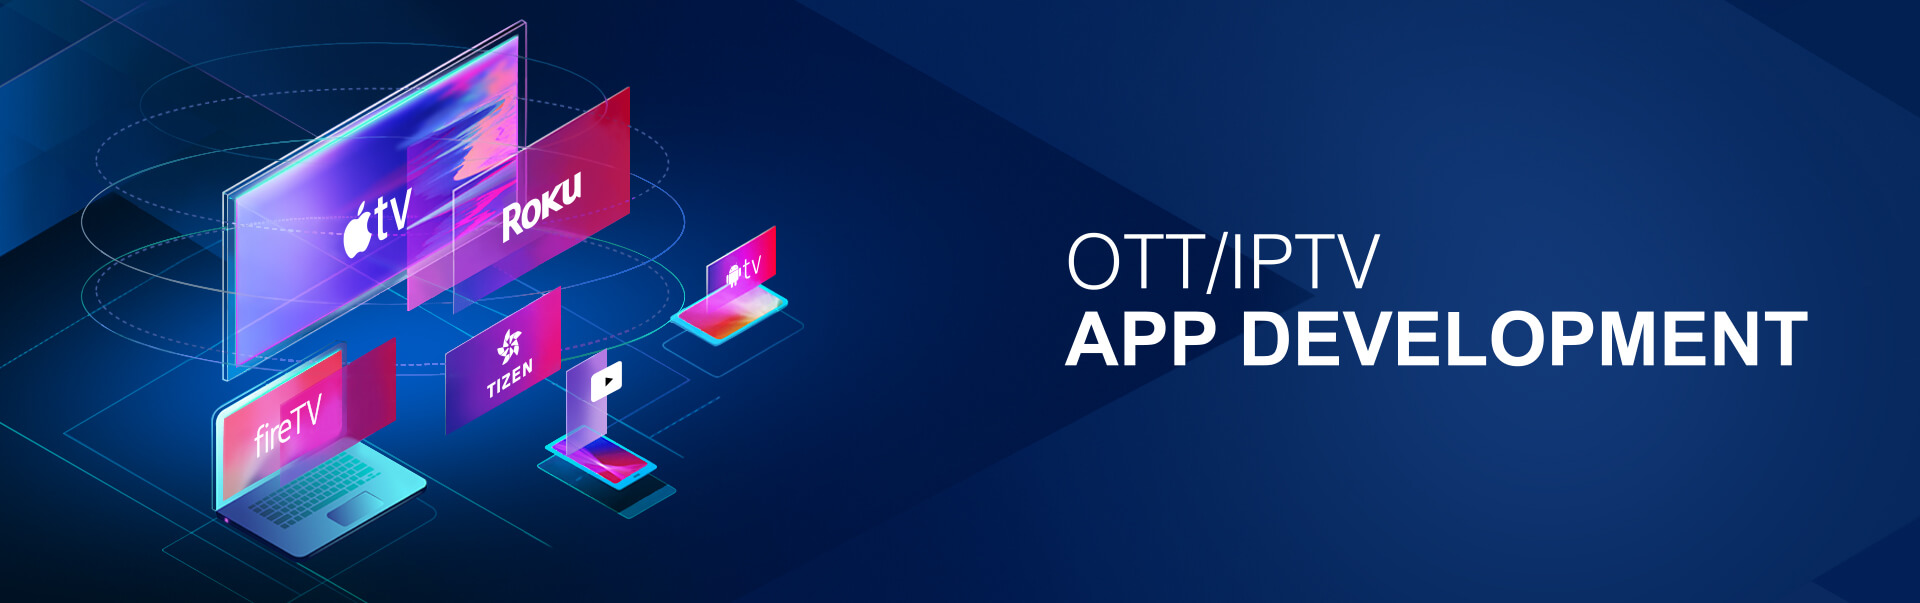 OTT/IPTV App Development